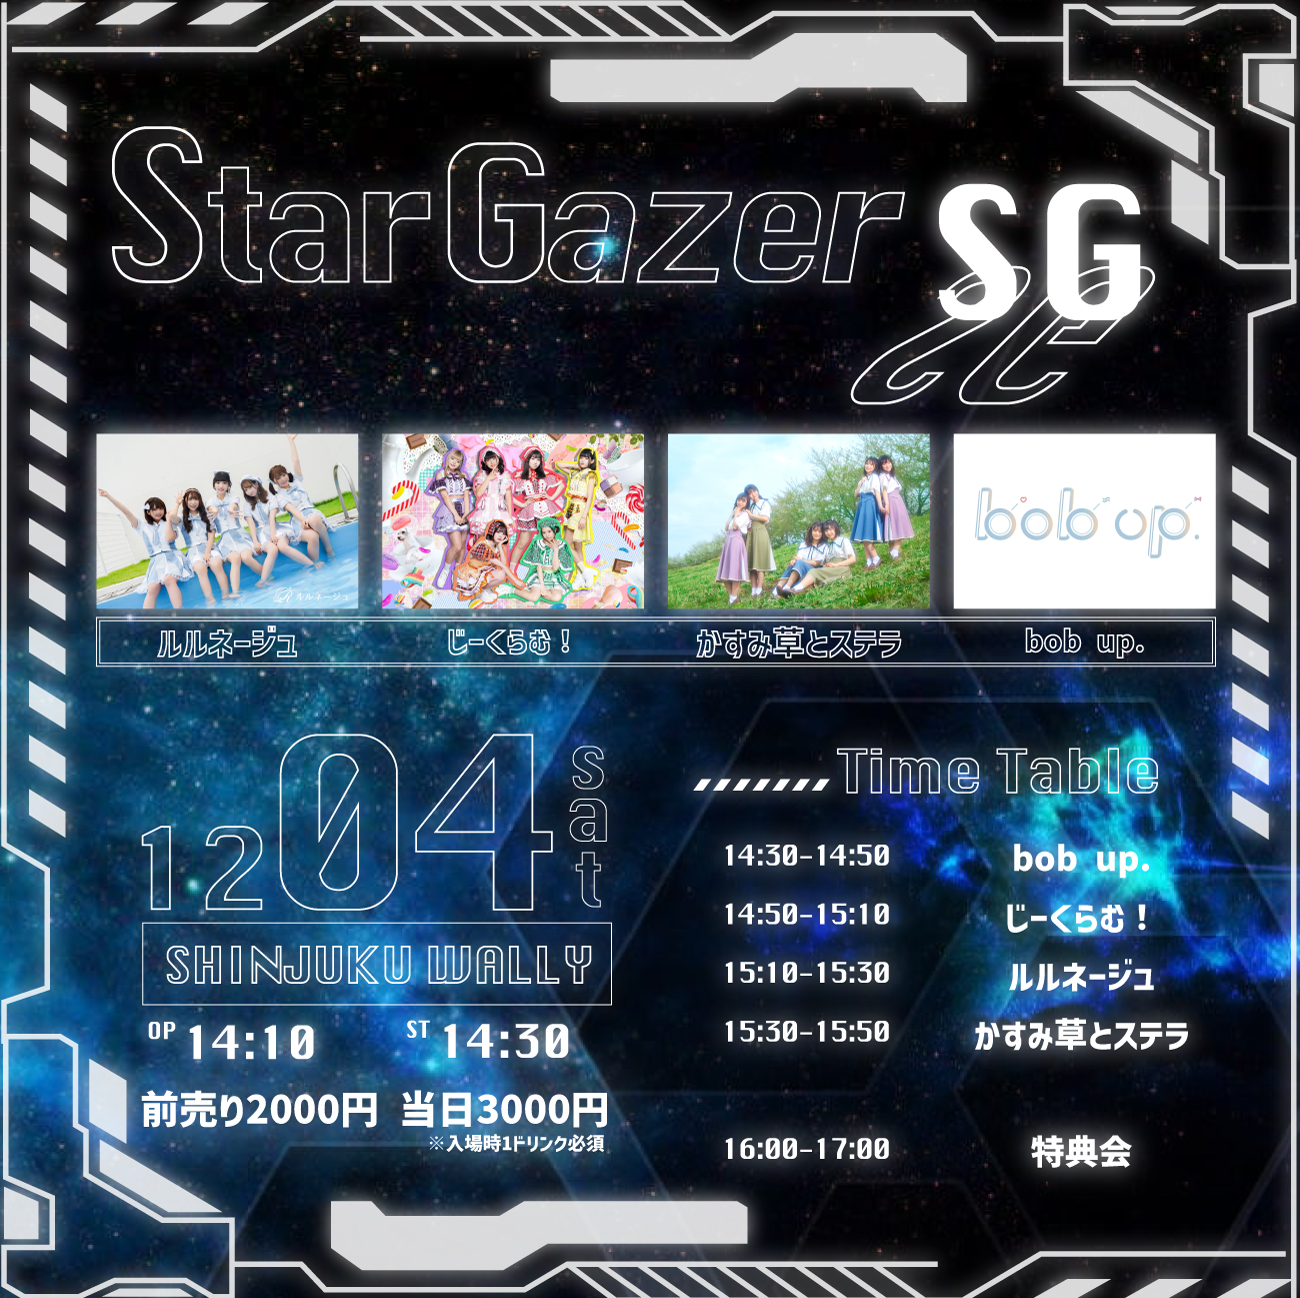 12/4(土) StarGazer -SG-